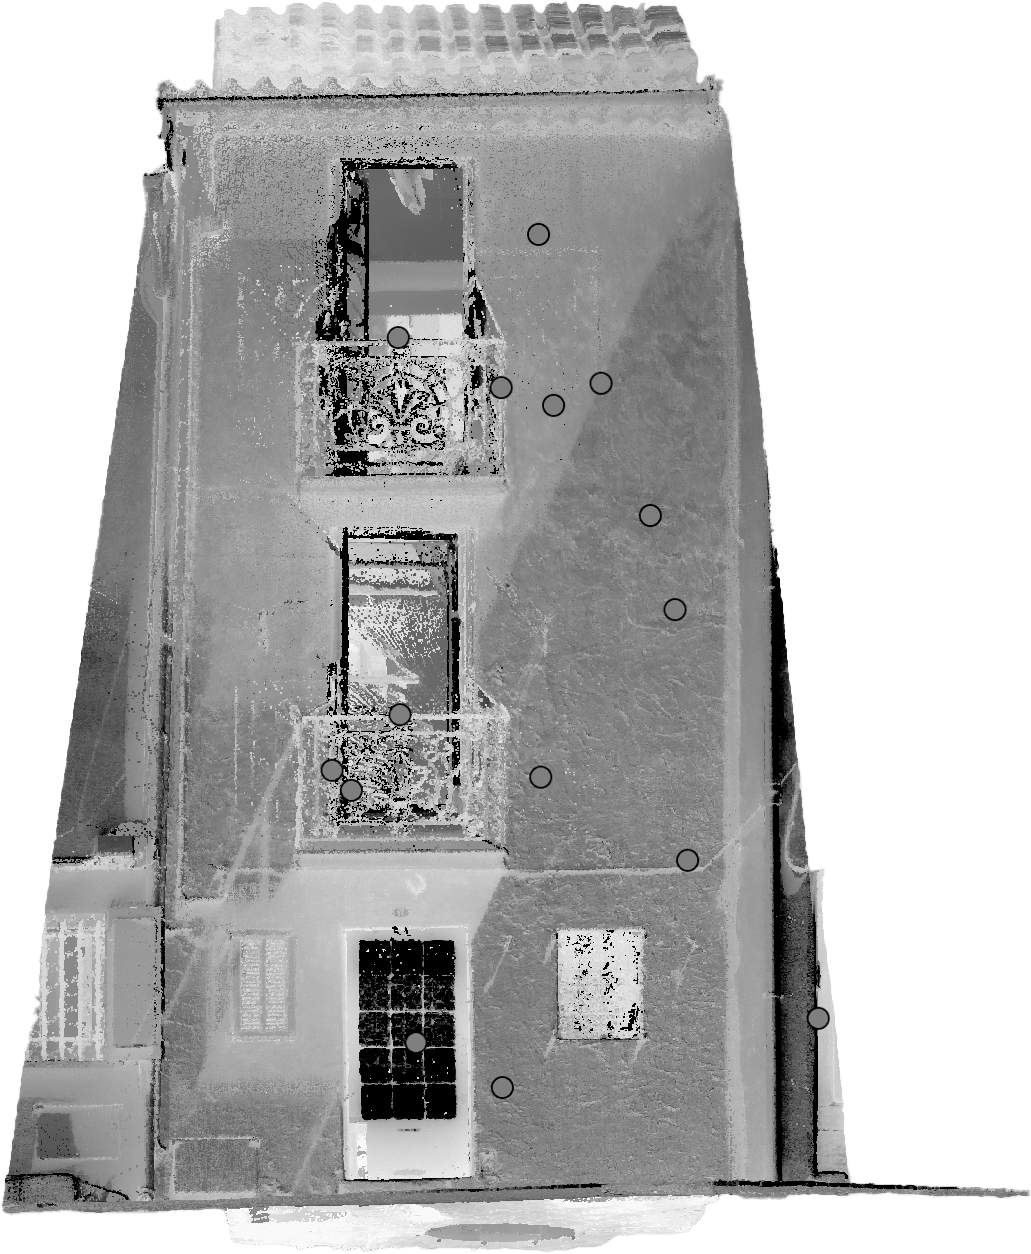 Découvrez l'histoire cachée d'une maison du Suquet à Cannes grâce à notre relevé 3D avec Leica BLK 360. Une révélation en 3D signée SANAGI Nous avons crée une vue de face du Nuage de point